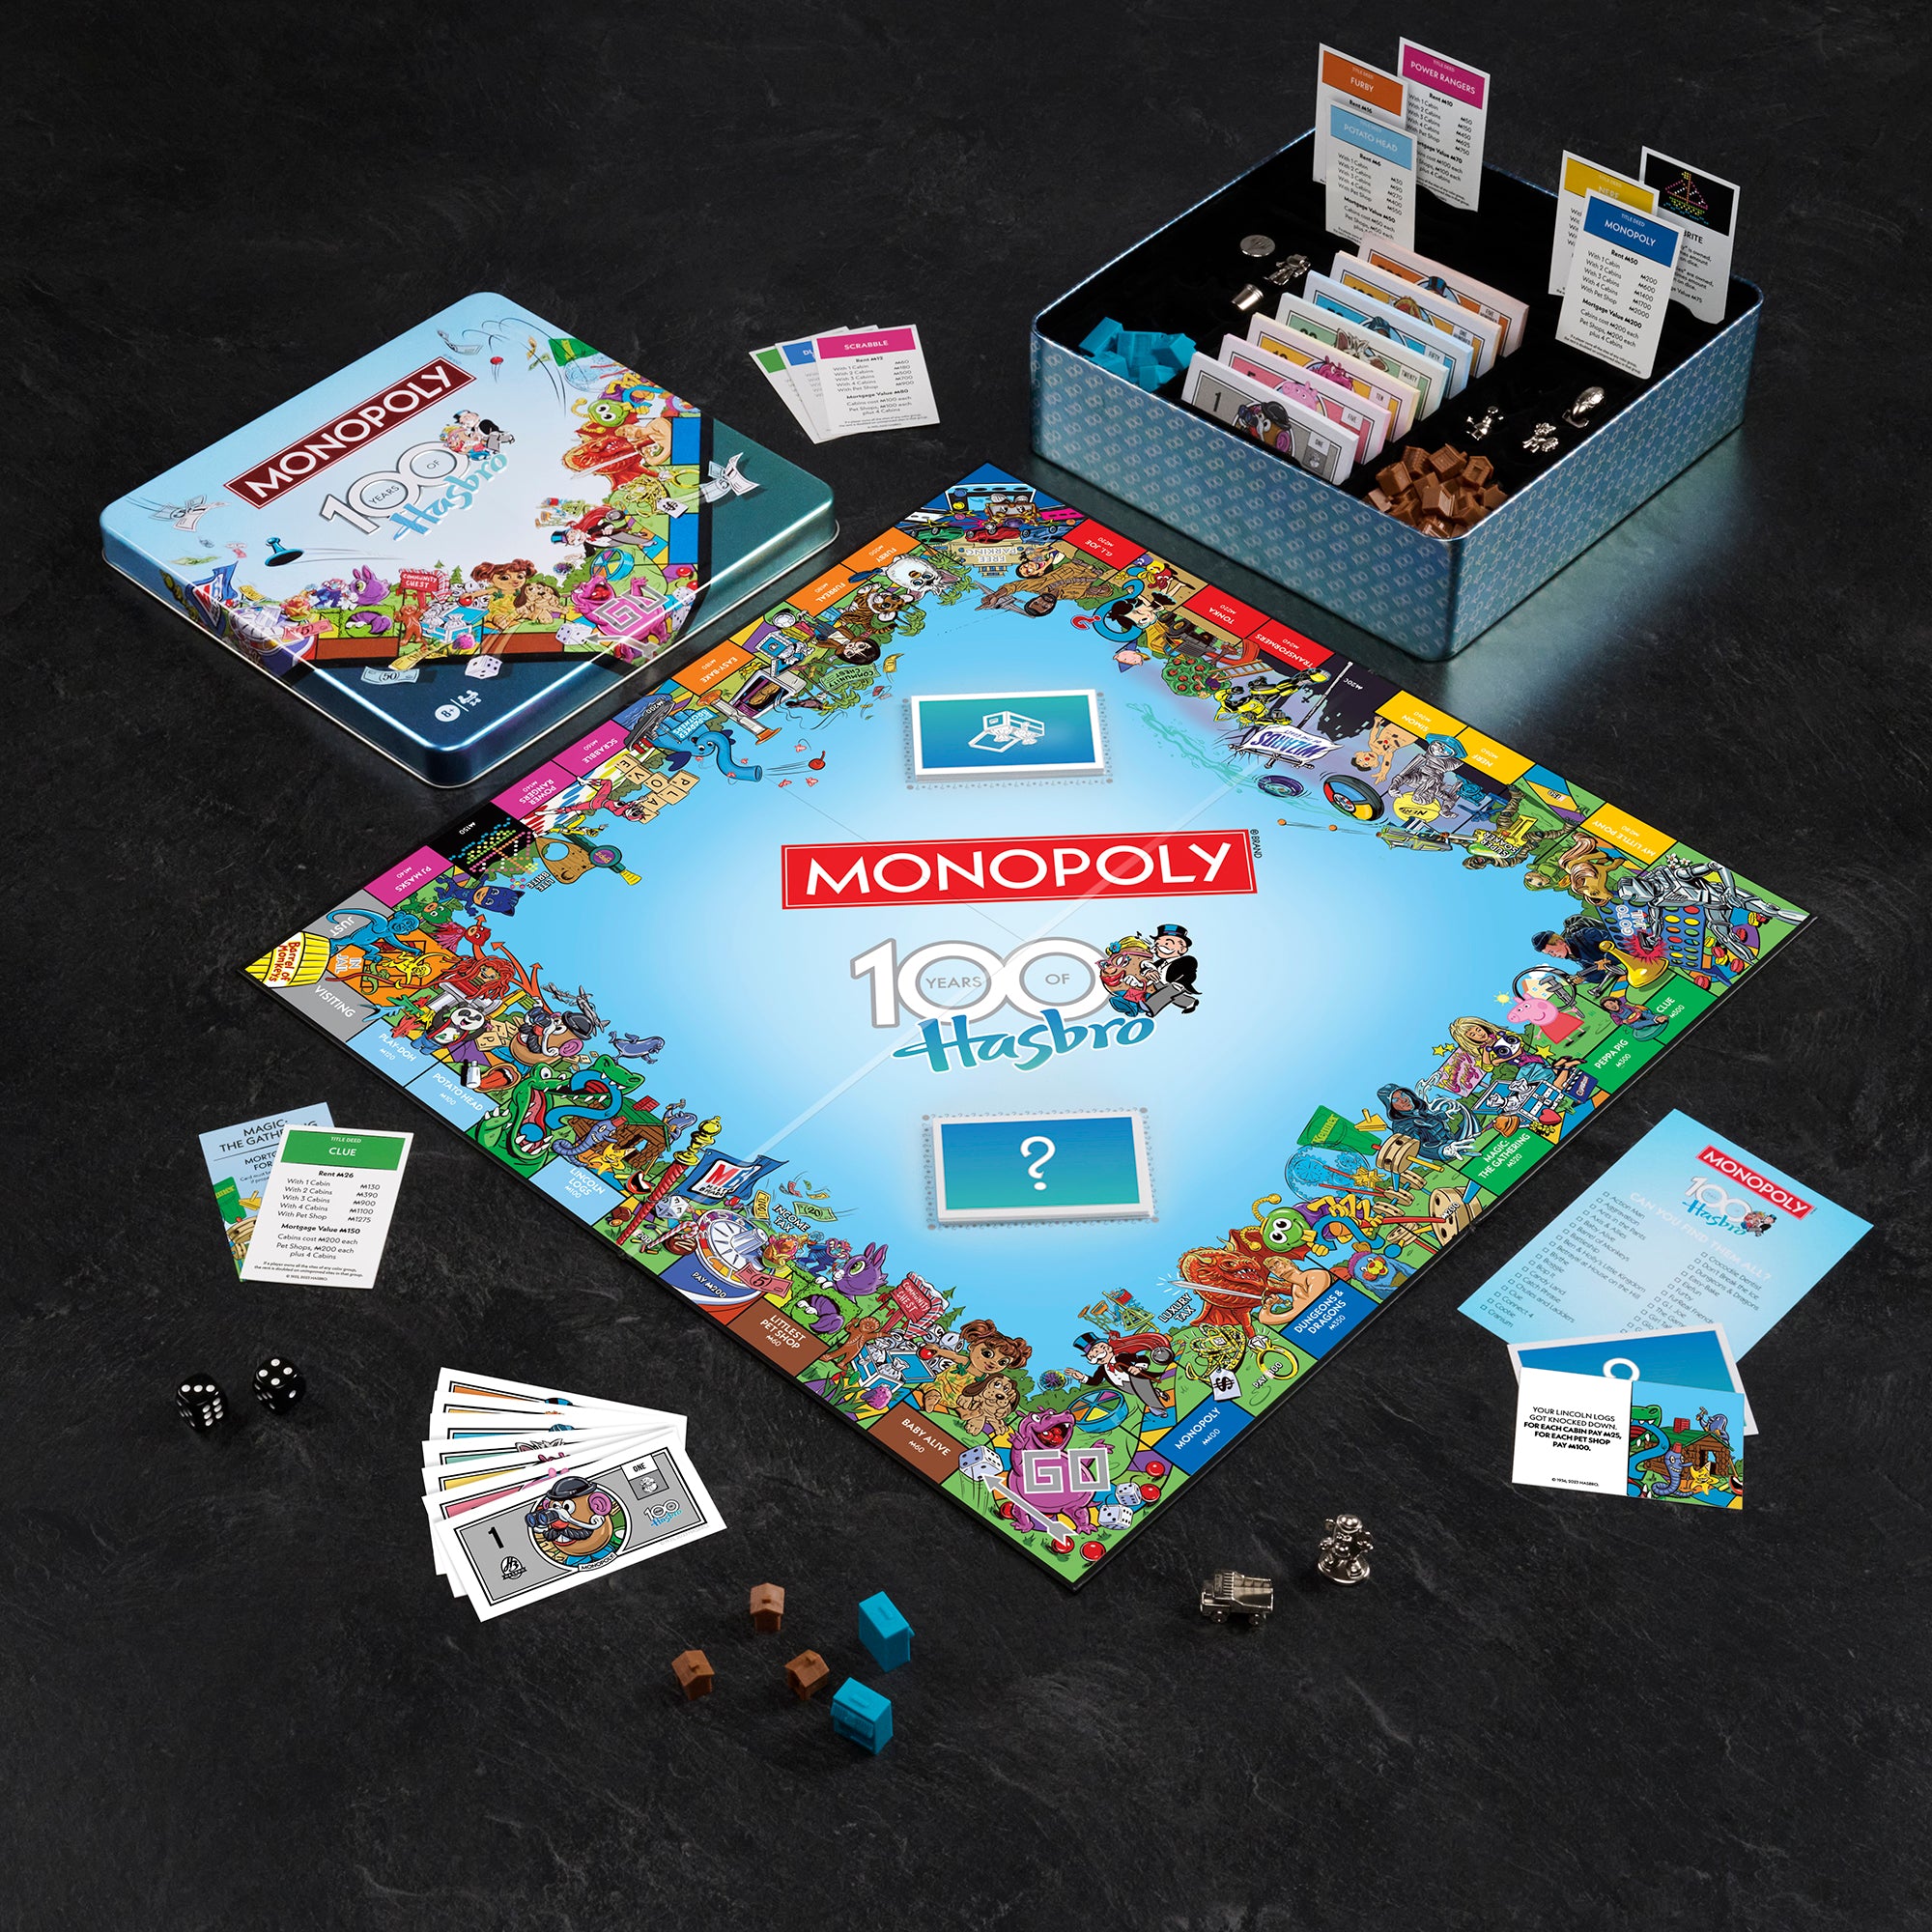  Monopoly - Littlest Pet Shop Edition : Toys & Games